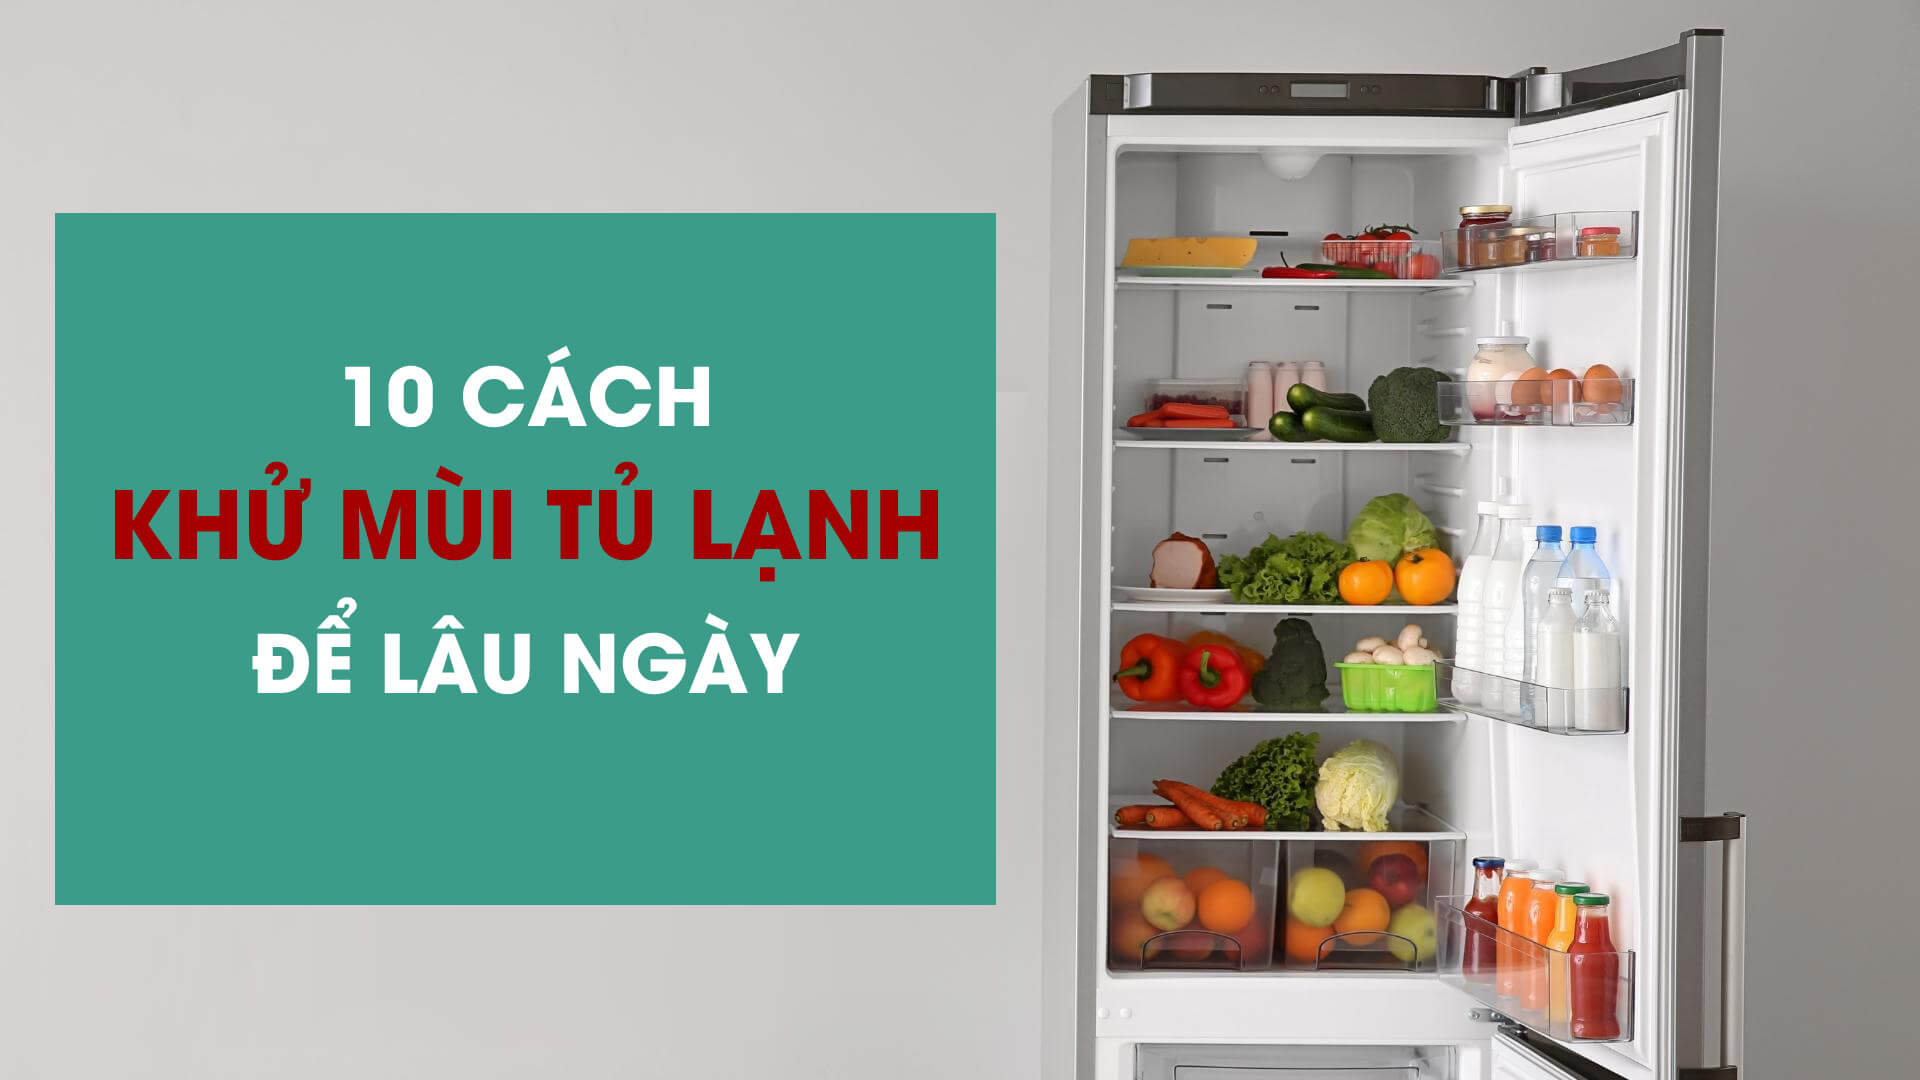 10 cách khử mùi tủ lạnh để lâu ngày hiệu quả nhất